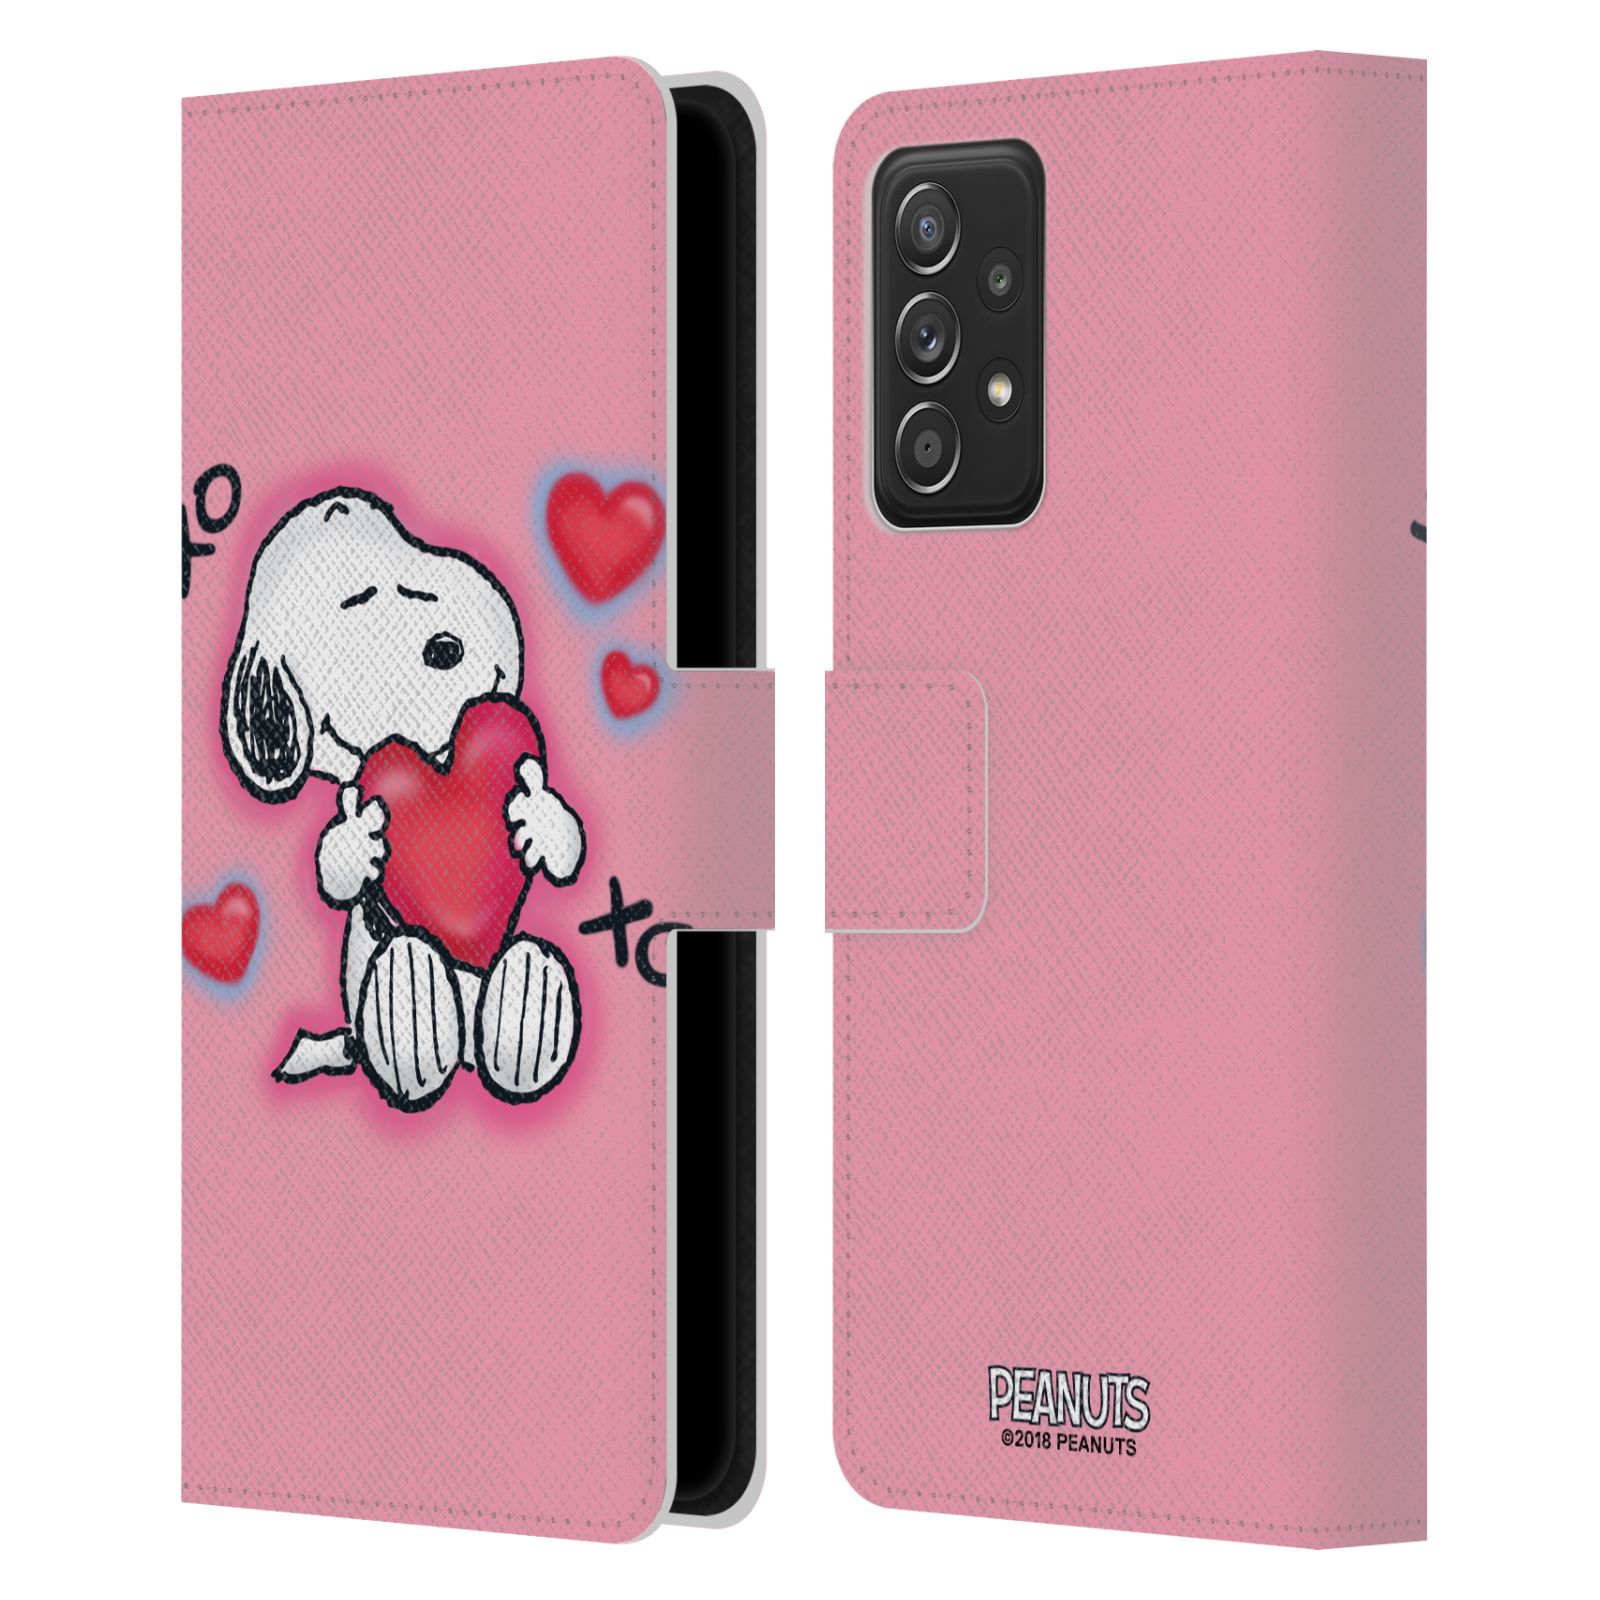 Pouzdro na mobil Samsung Galaxy A52 / A52 G - HEAD CASE - Peanuts - Snoopy a srdíčka